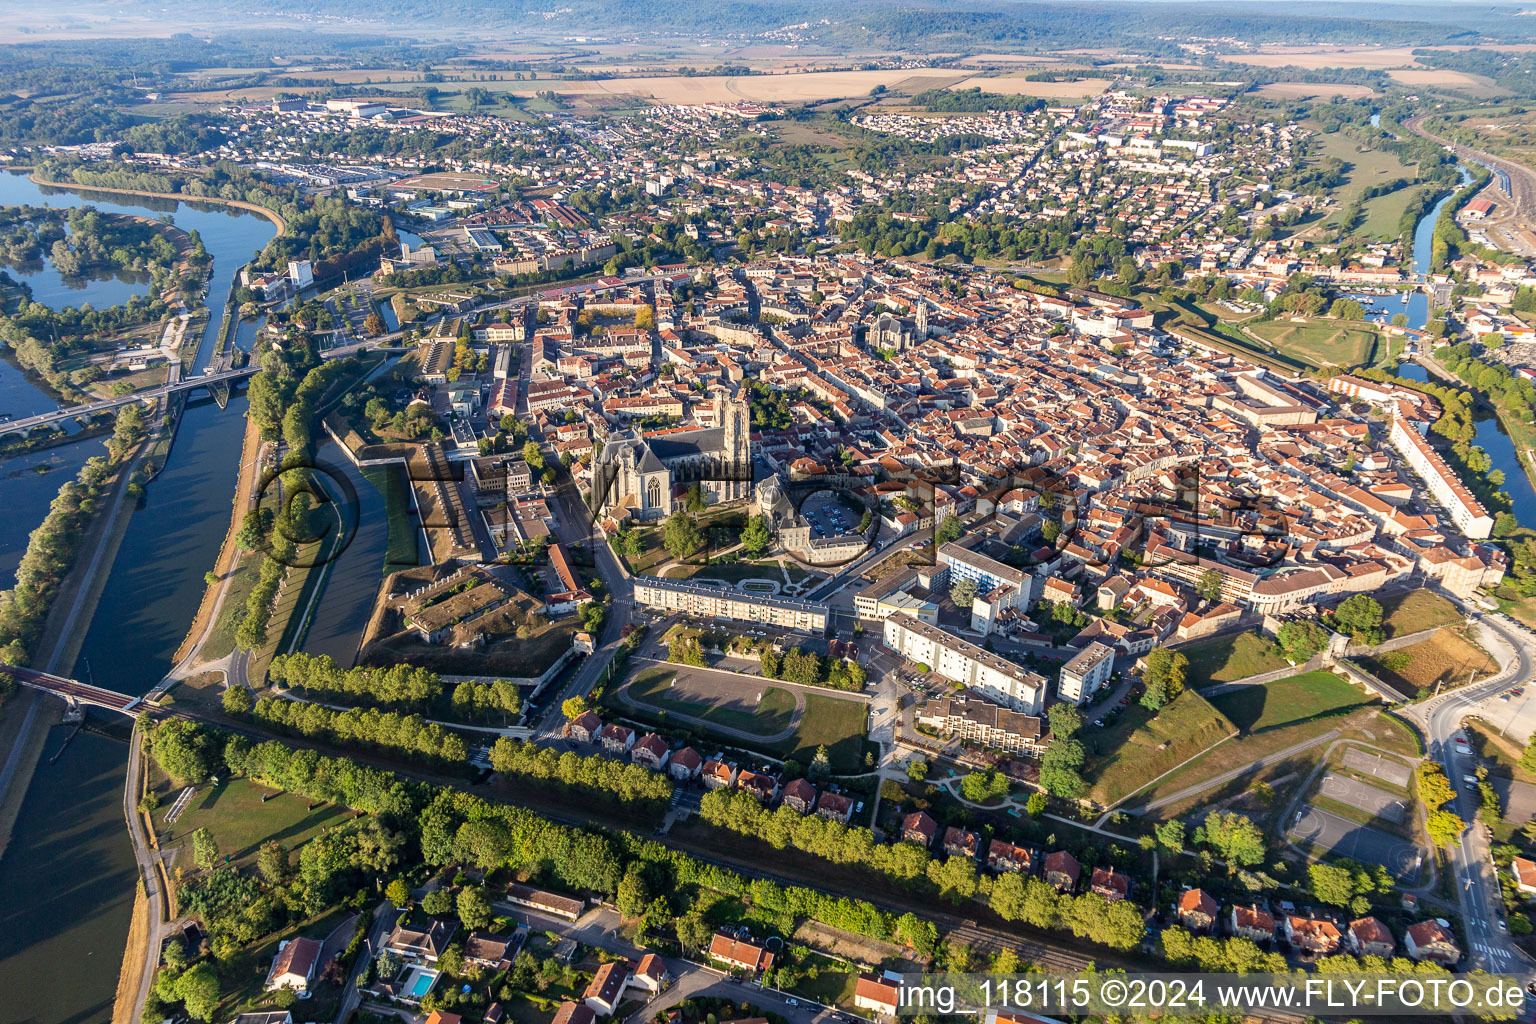 Luftbild von Stadtzentrum im Innenstadtbereich zwischen Ufer des Flußverlaufes Mosel und dem Kanal Rhin-Marne in Toul in Grand Est im Bundesland Meurthe-et-Moselle, Frankreich